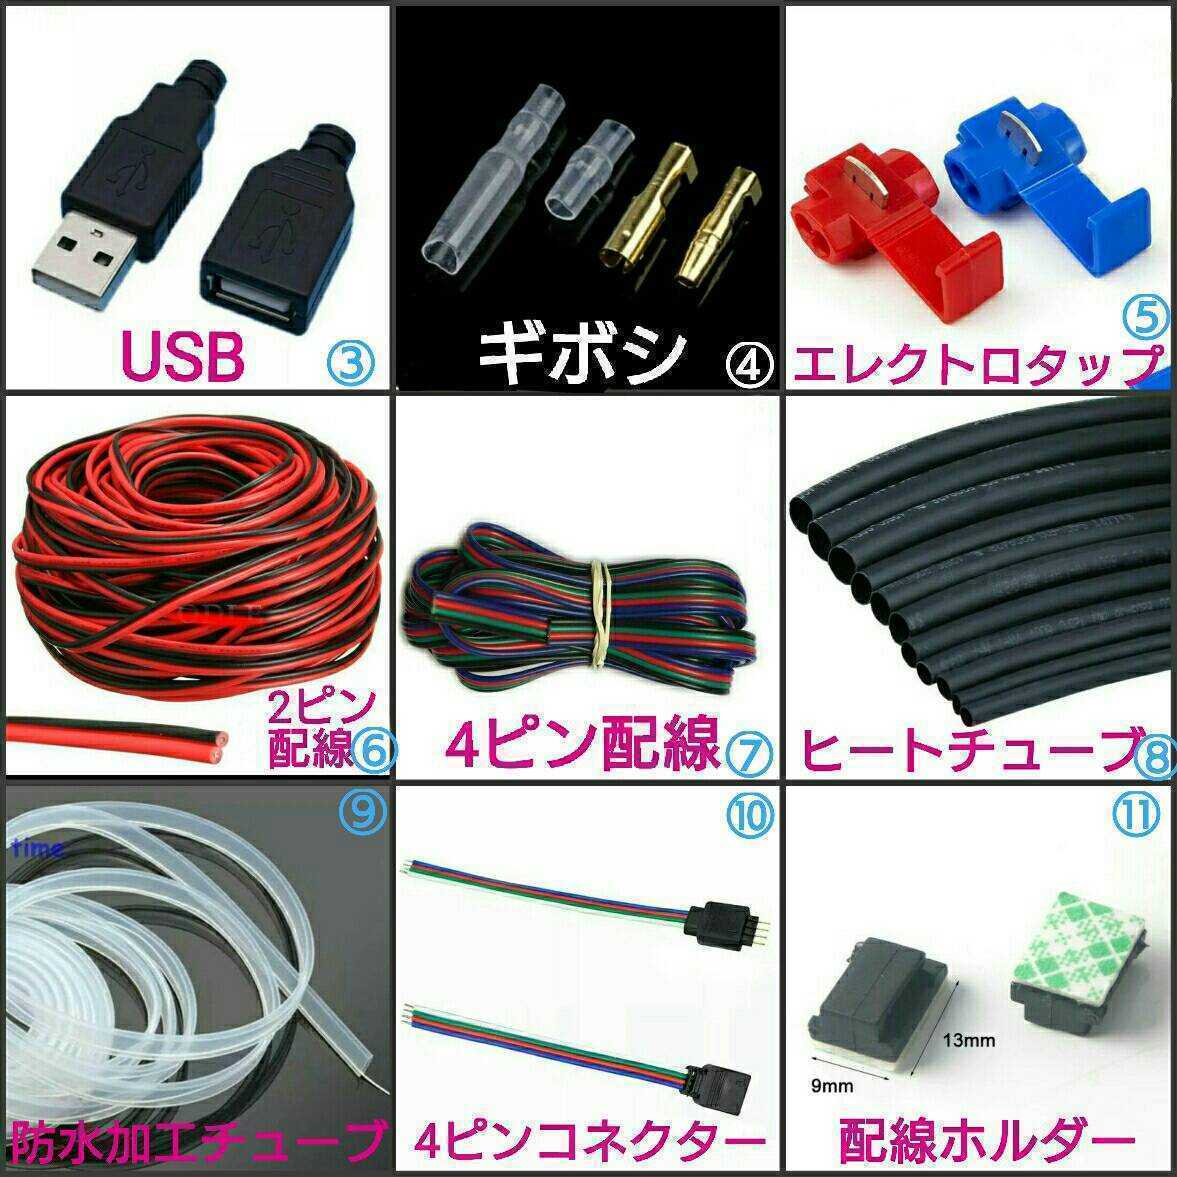 [ стоимость доставки 120 иен ~]⑫ DIY для! LED лента сопутствующие товары #LED лента собственное производство для! #⑫ сенсор ON/OFF